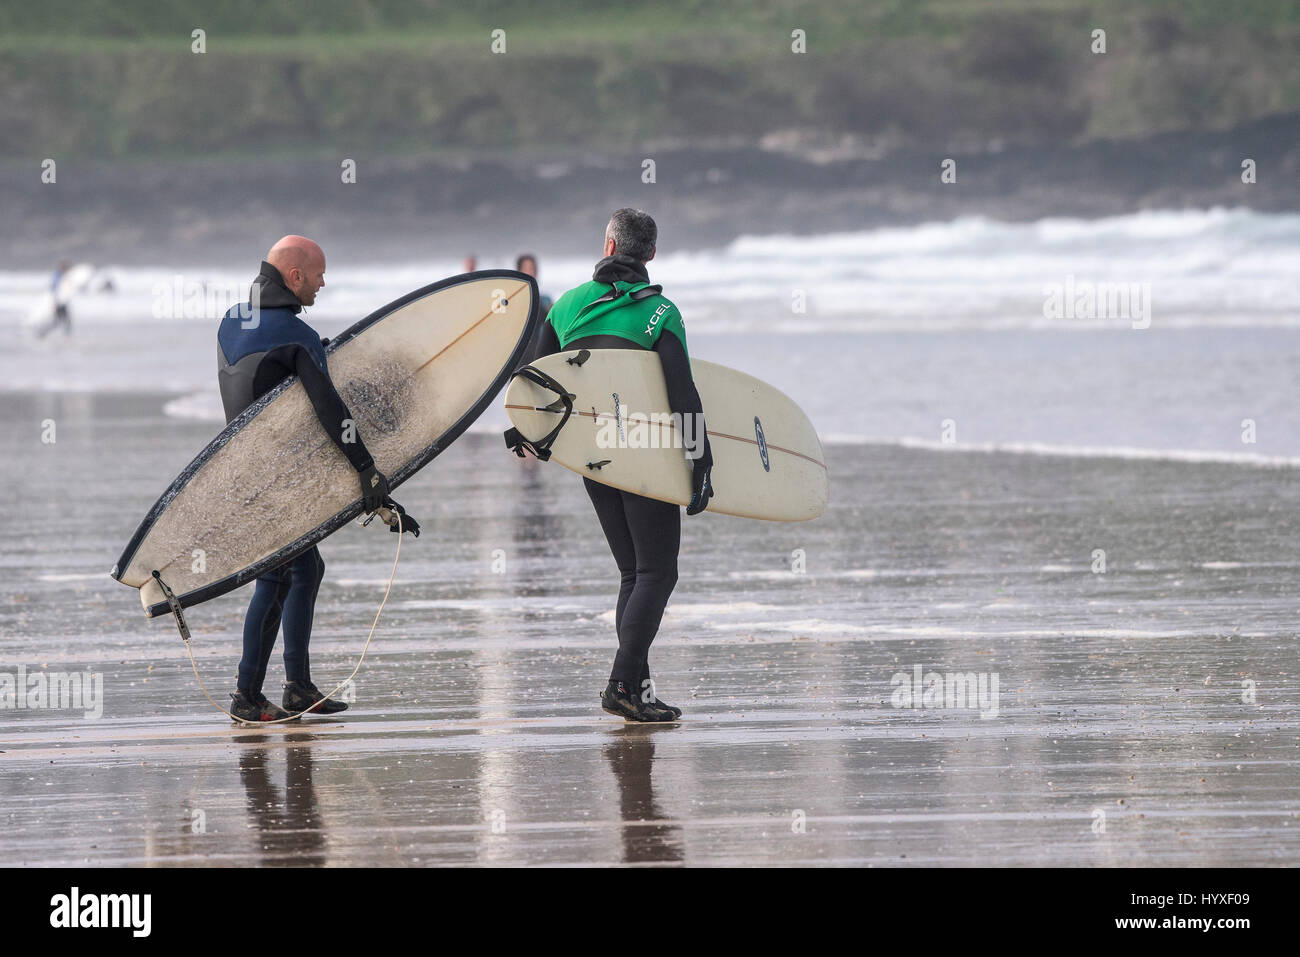 Zwei Surfer mit Surfbrettern Surfen UK Cornwall Wandern Wassersport Freizeitbeschäftigung Lifestyle Freizeit Freunde Stockfoto